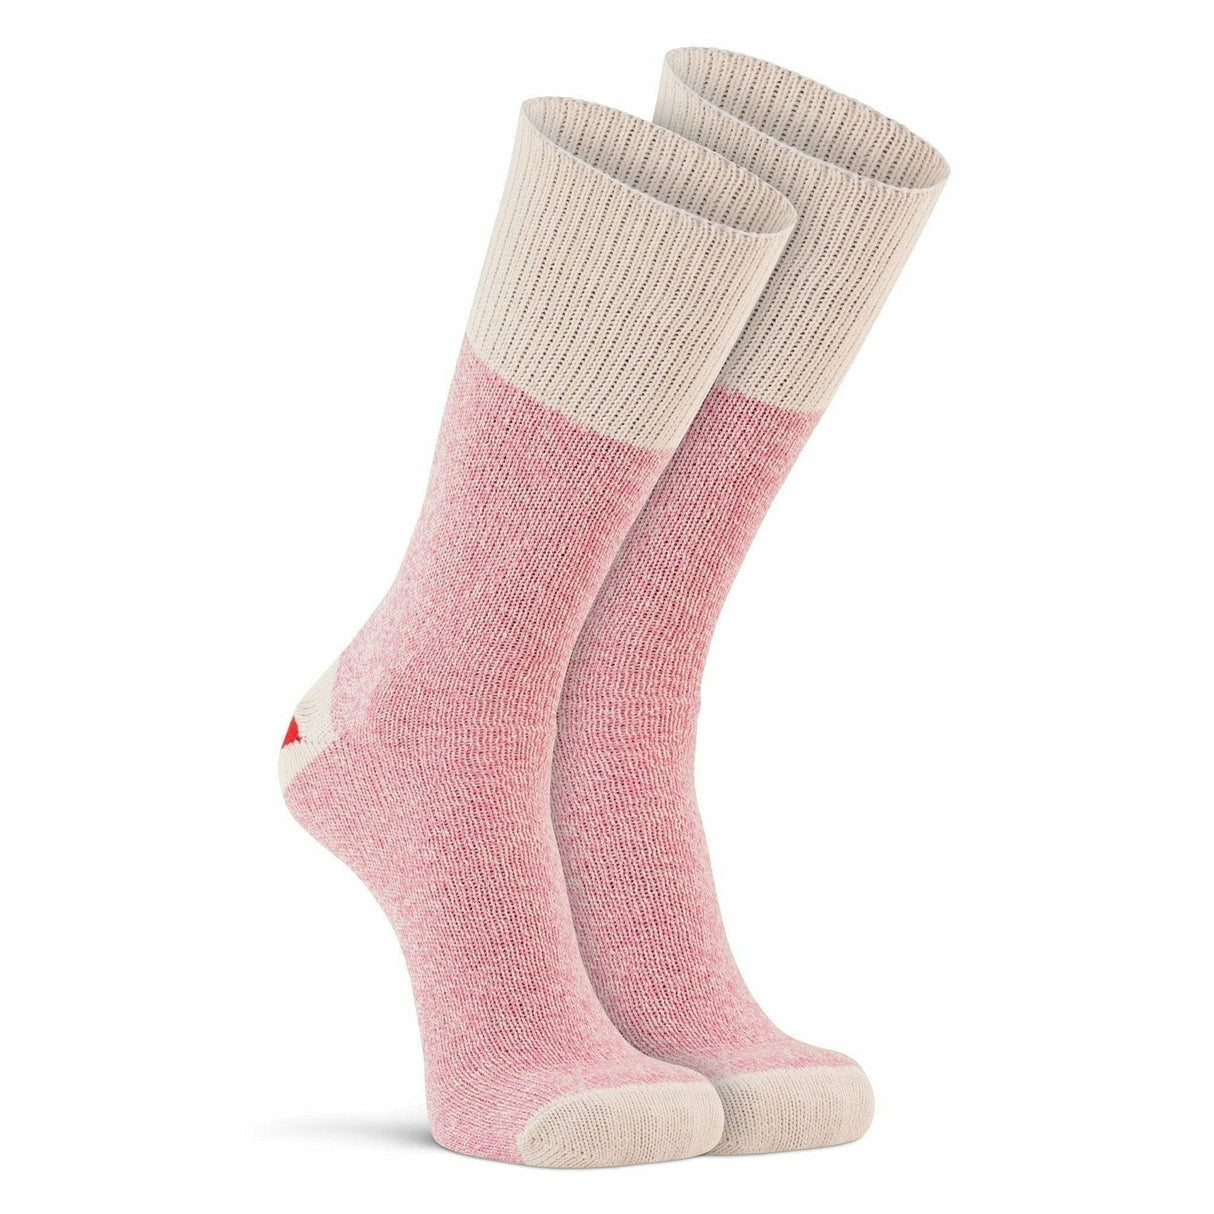 Fox River Original Rockford Red Heel Crew Socks  -  Small / Pink